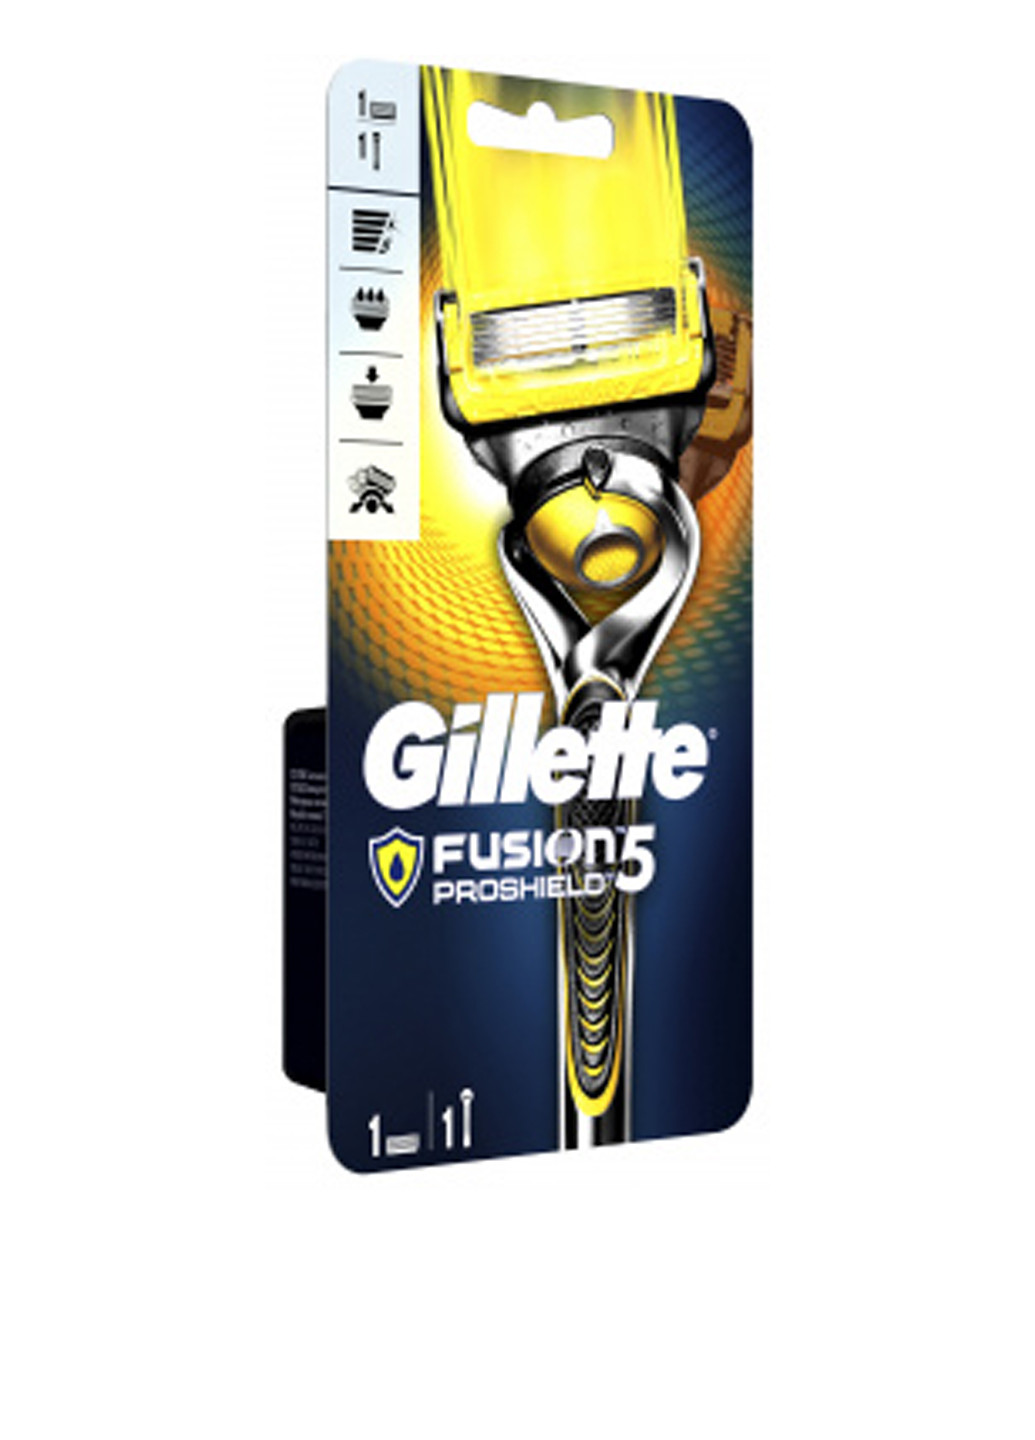 Станок-бритва Fusion5 ProShield cо сменным картриджем Gillette (138200547)